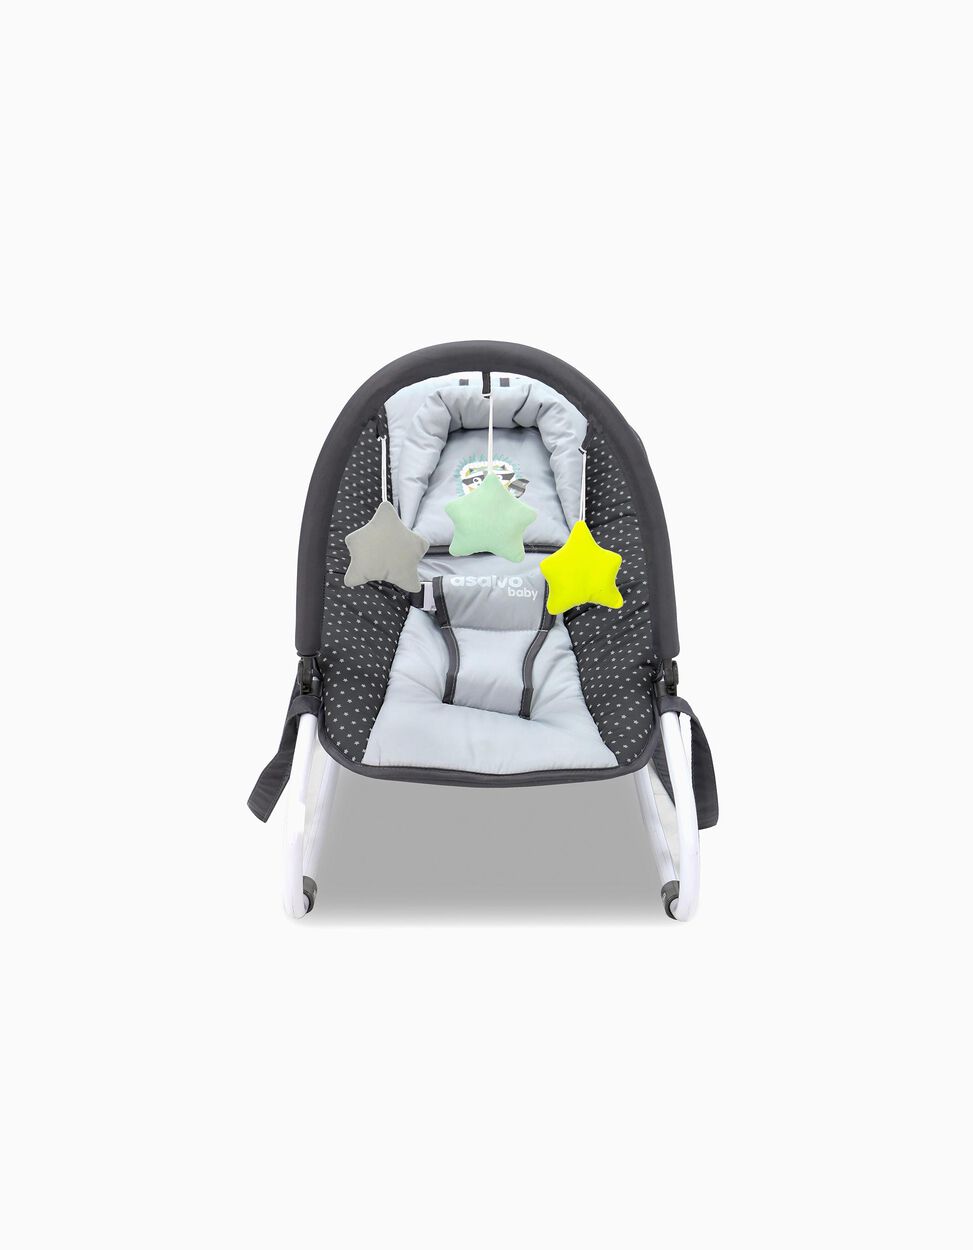 Cadeira De Repouso Asalvo Baby Mapache